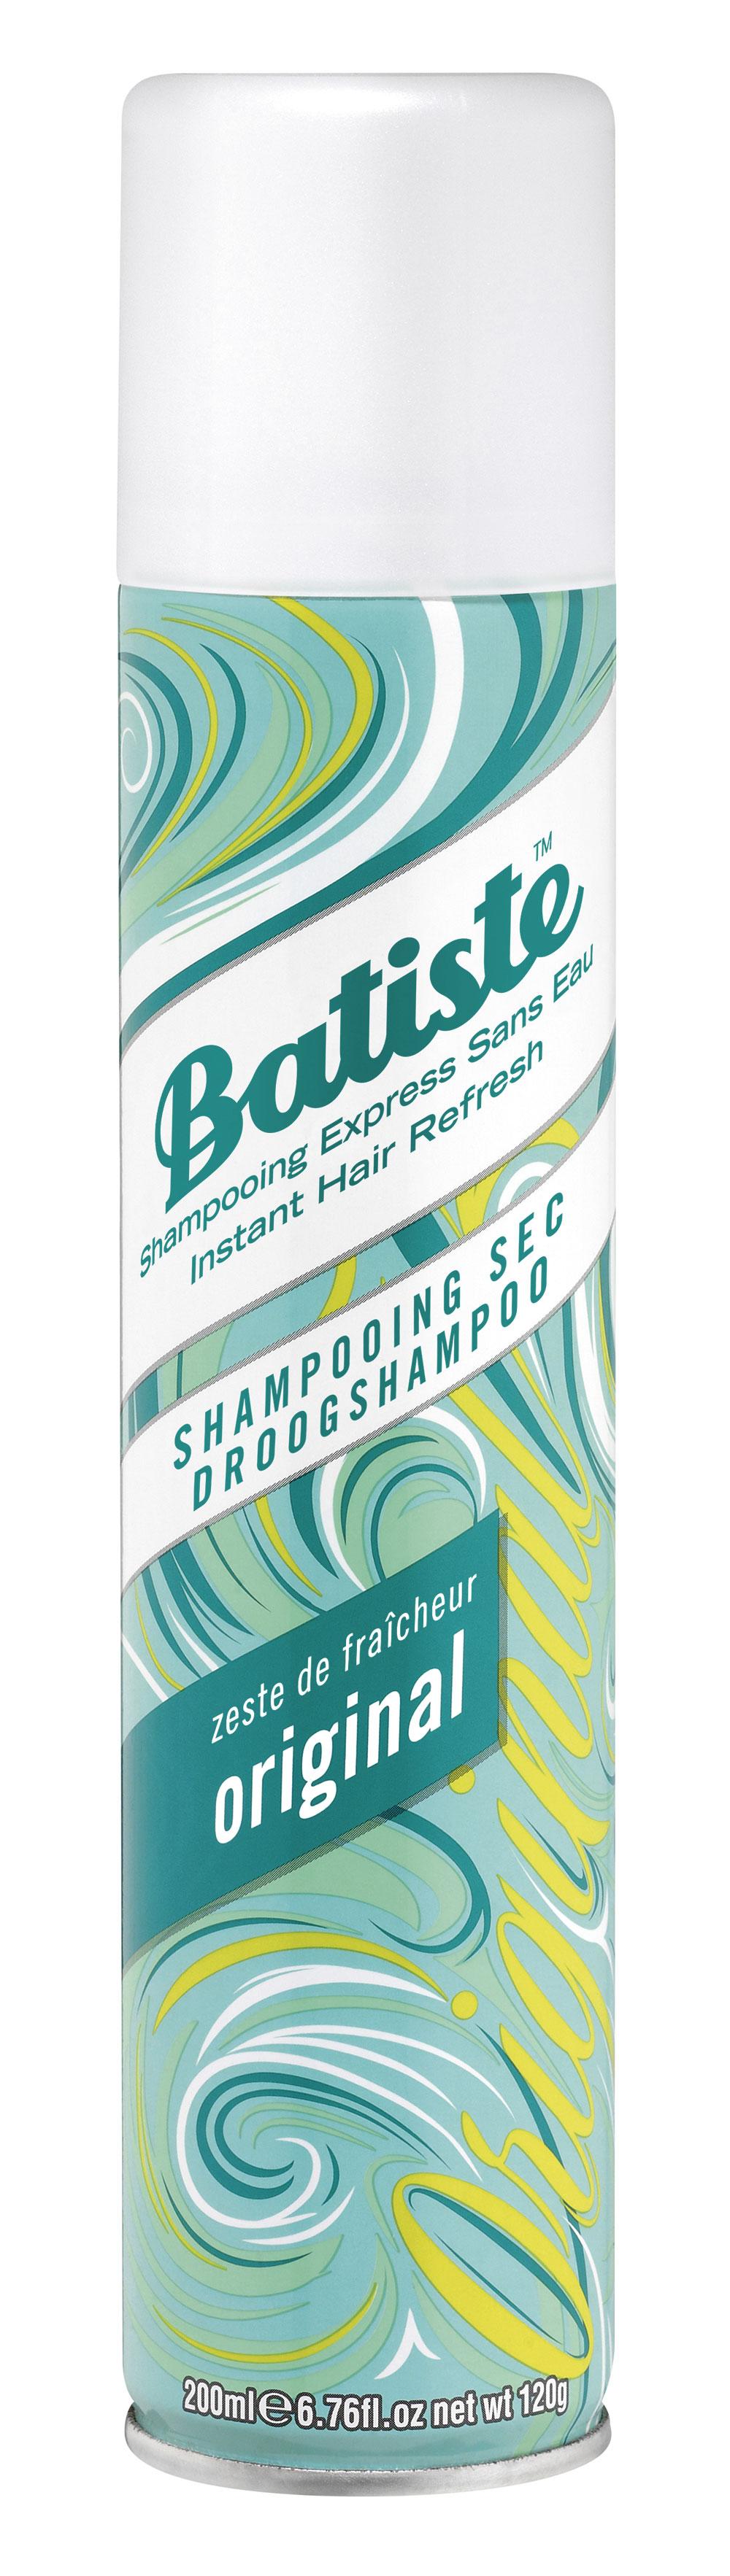 Shampoing sec, Batiste Original, 5,49 euros.